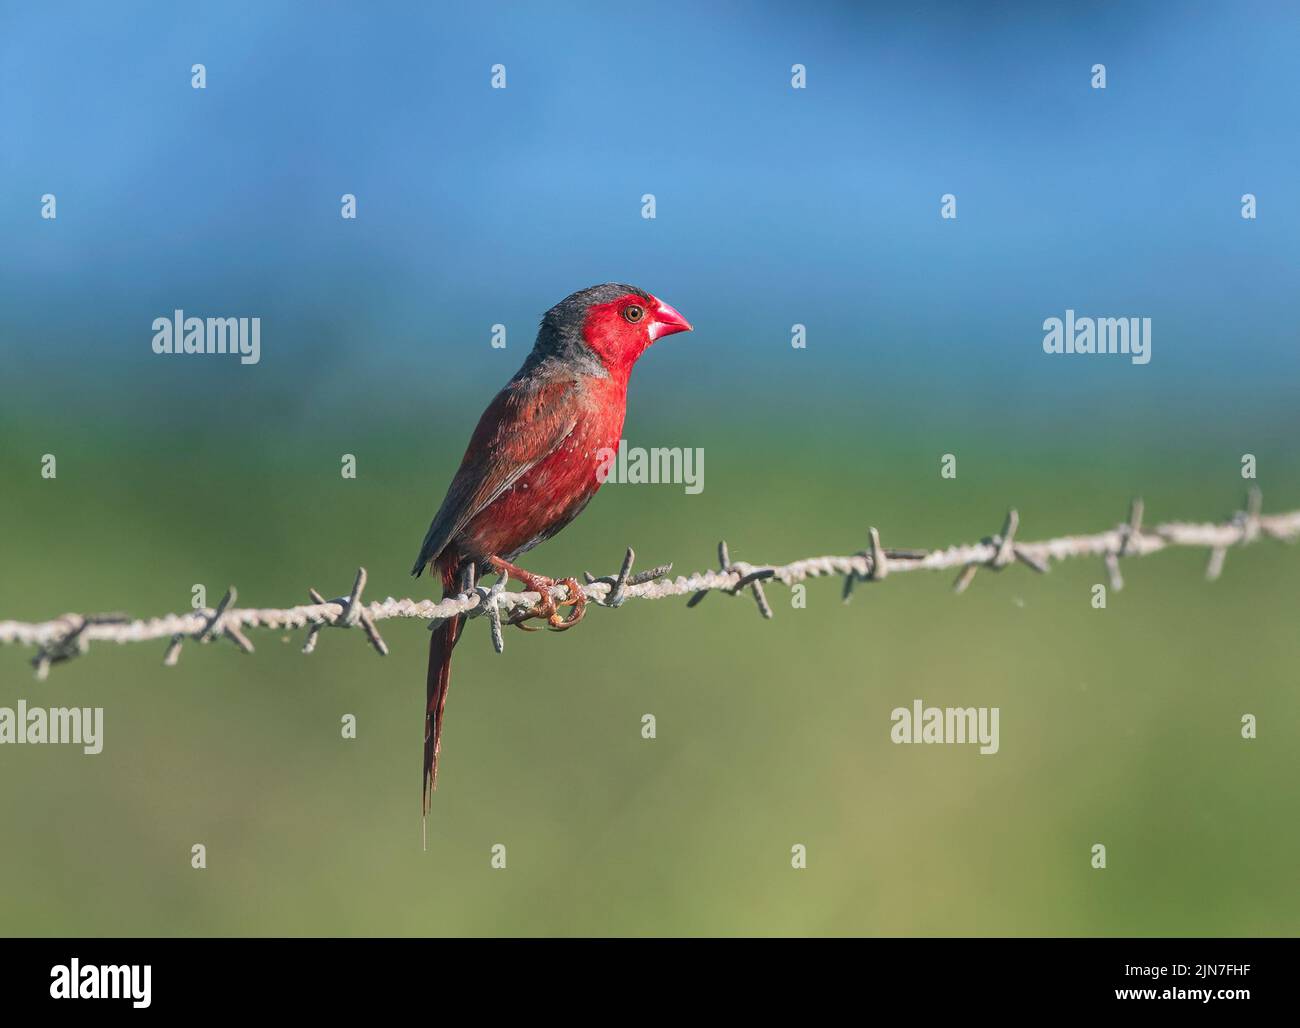 Finch de Crimson (Neochmia phaeton) perché sur un fil métallique, Mungulla Station, Queensland, Queensland, Australie Banque D'Images